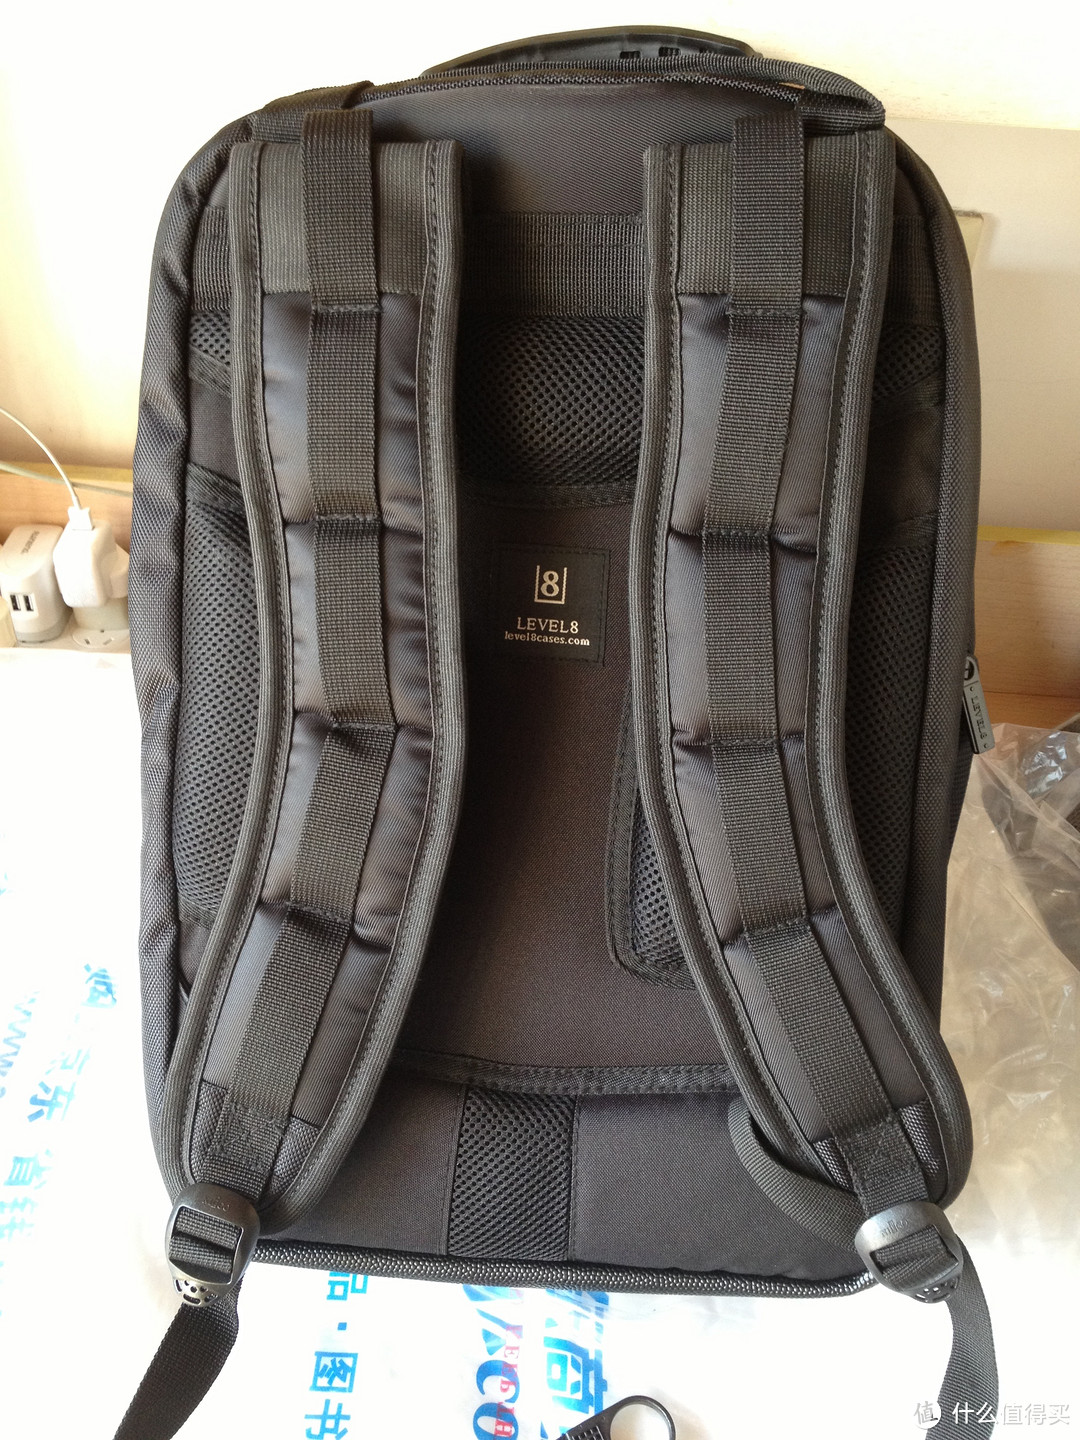 包包背面，应该是吸震肩带，加上透气型背部衬垫，不带横向的固定带。